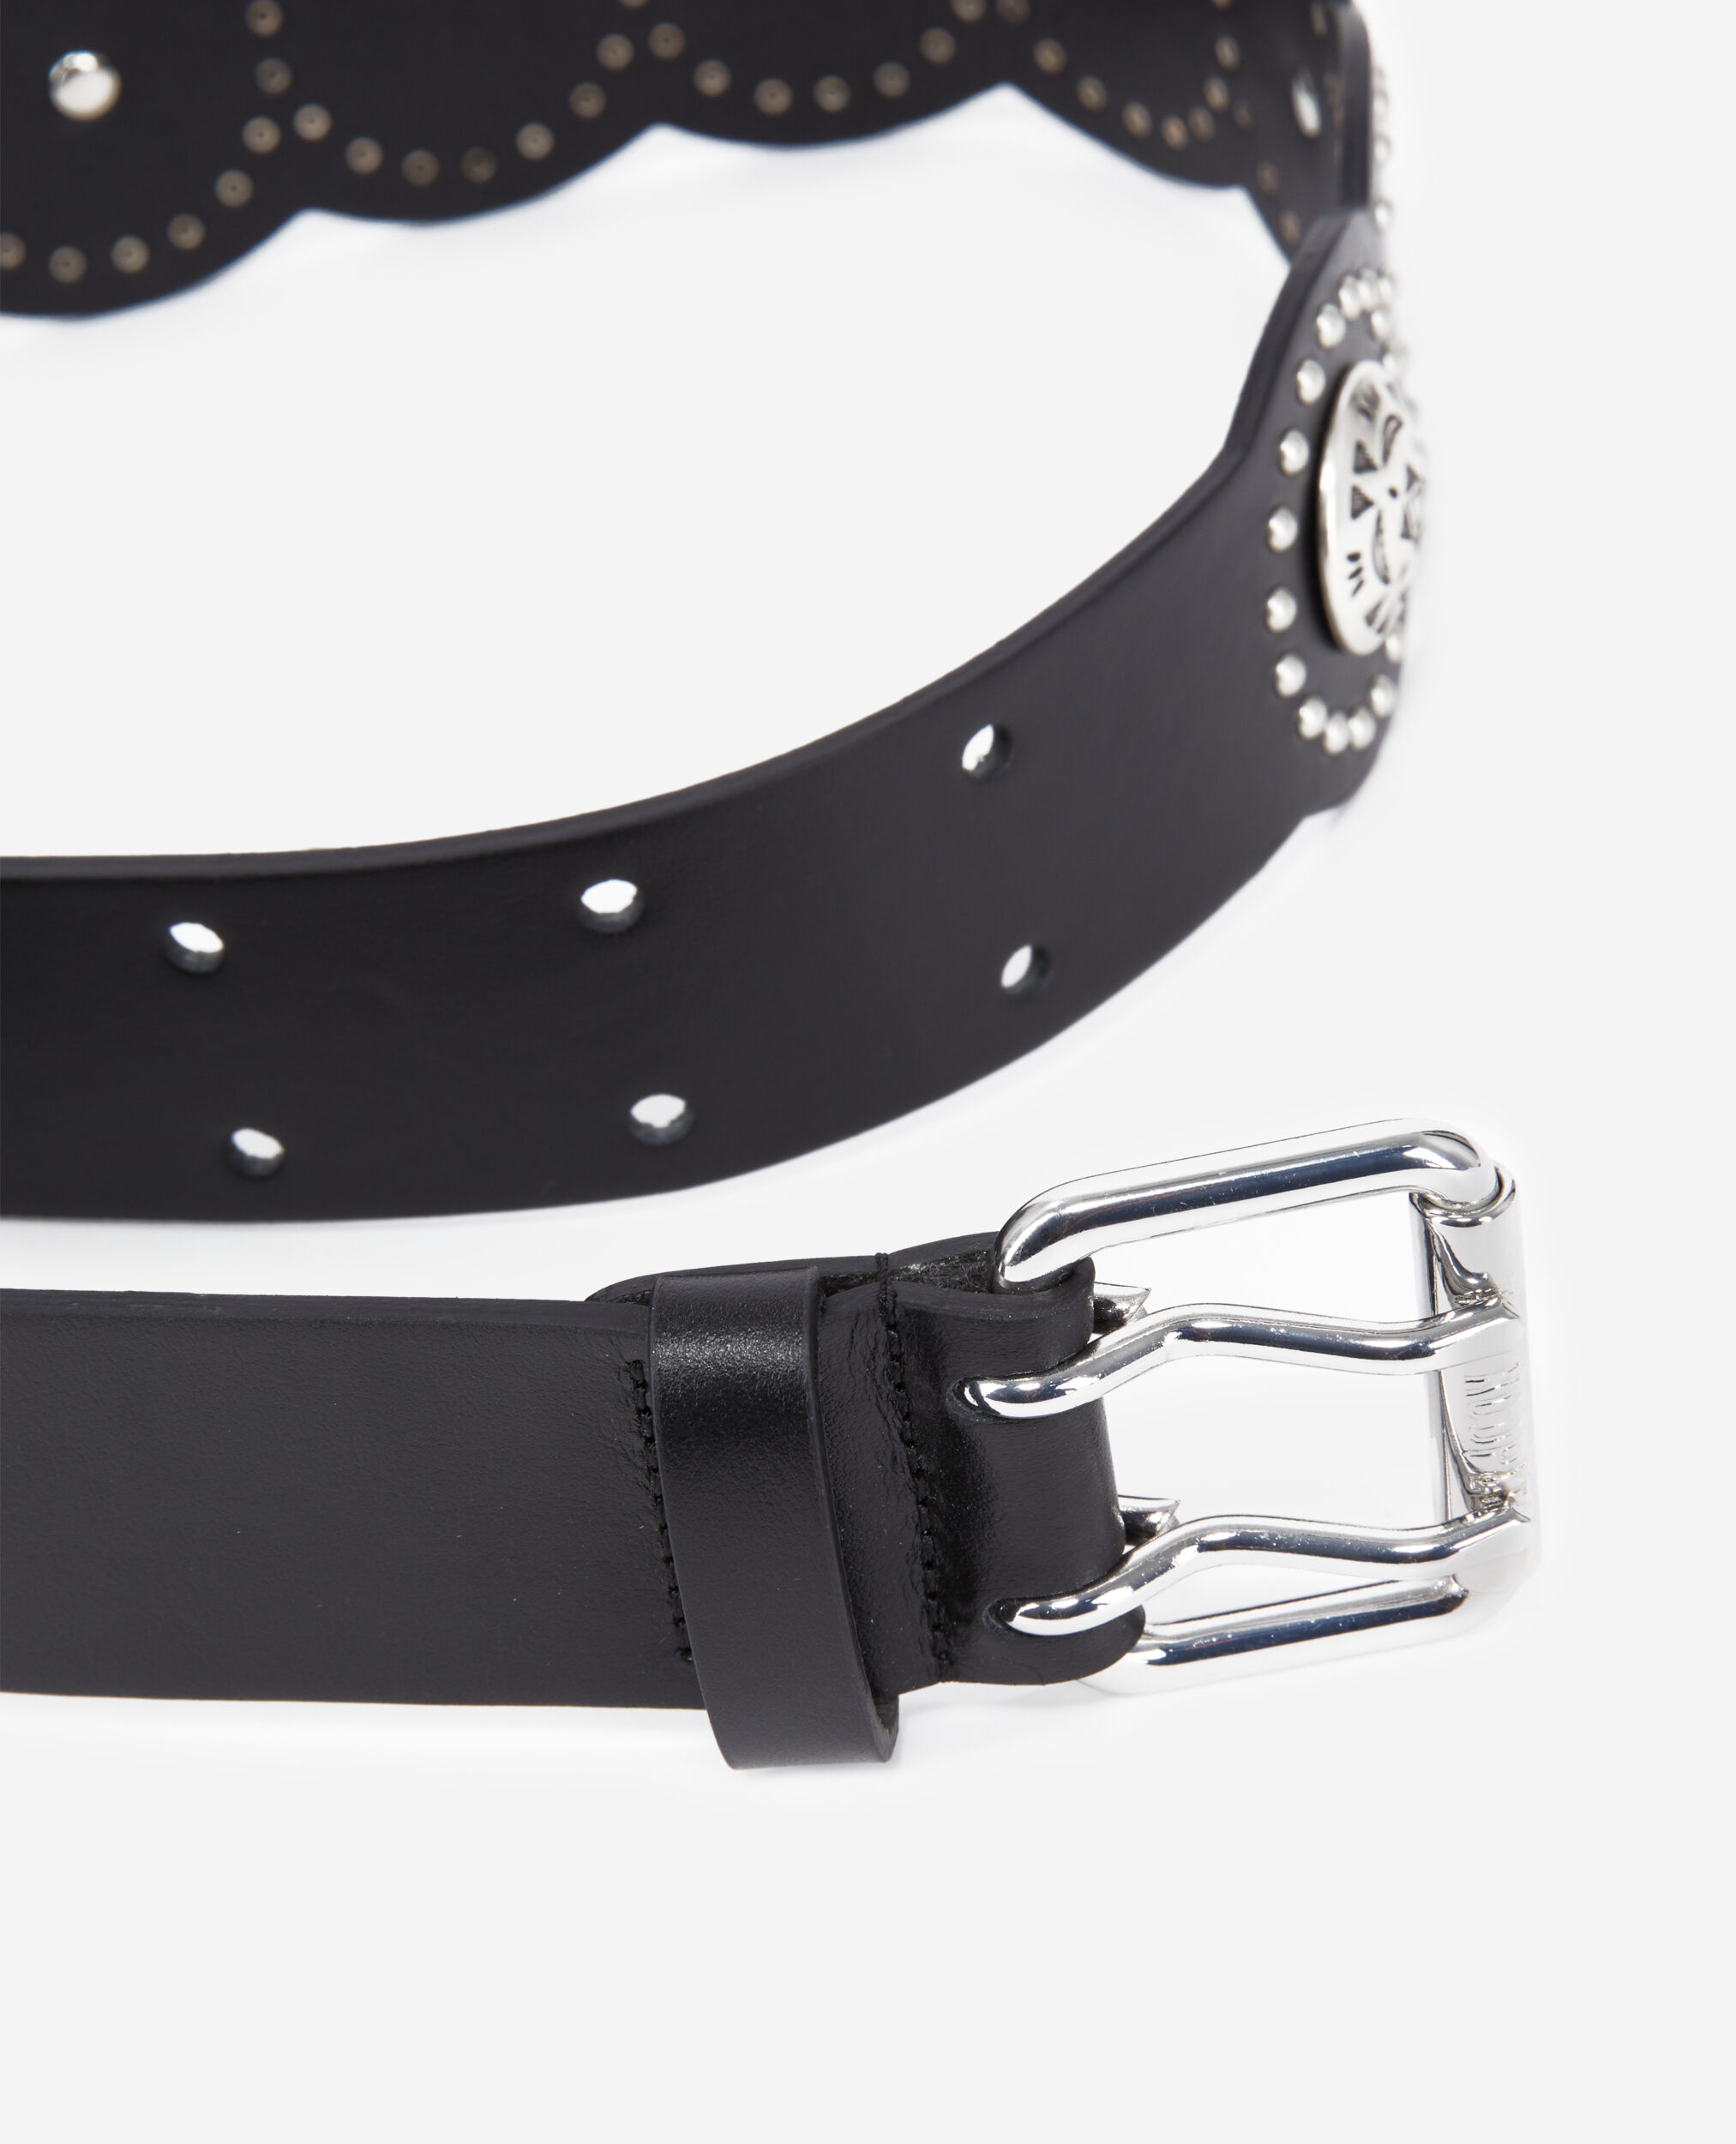 Black leather belt, BLACK, hi-res image number null